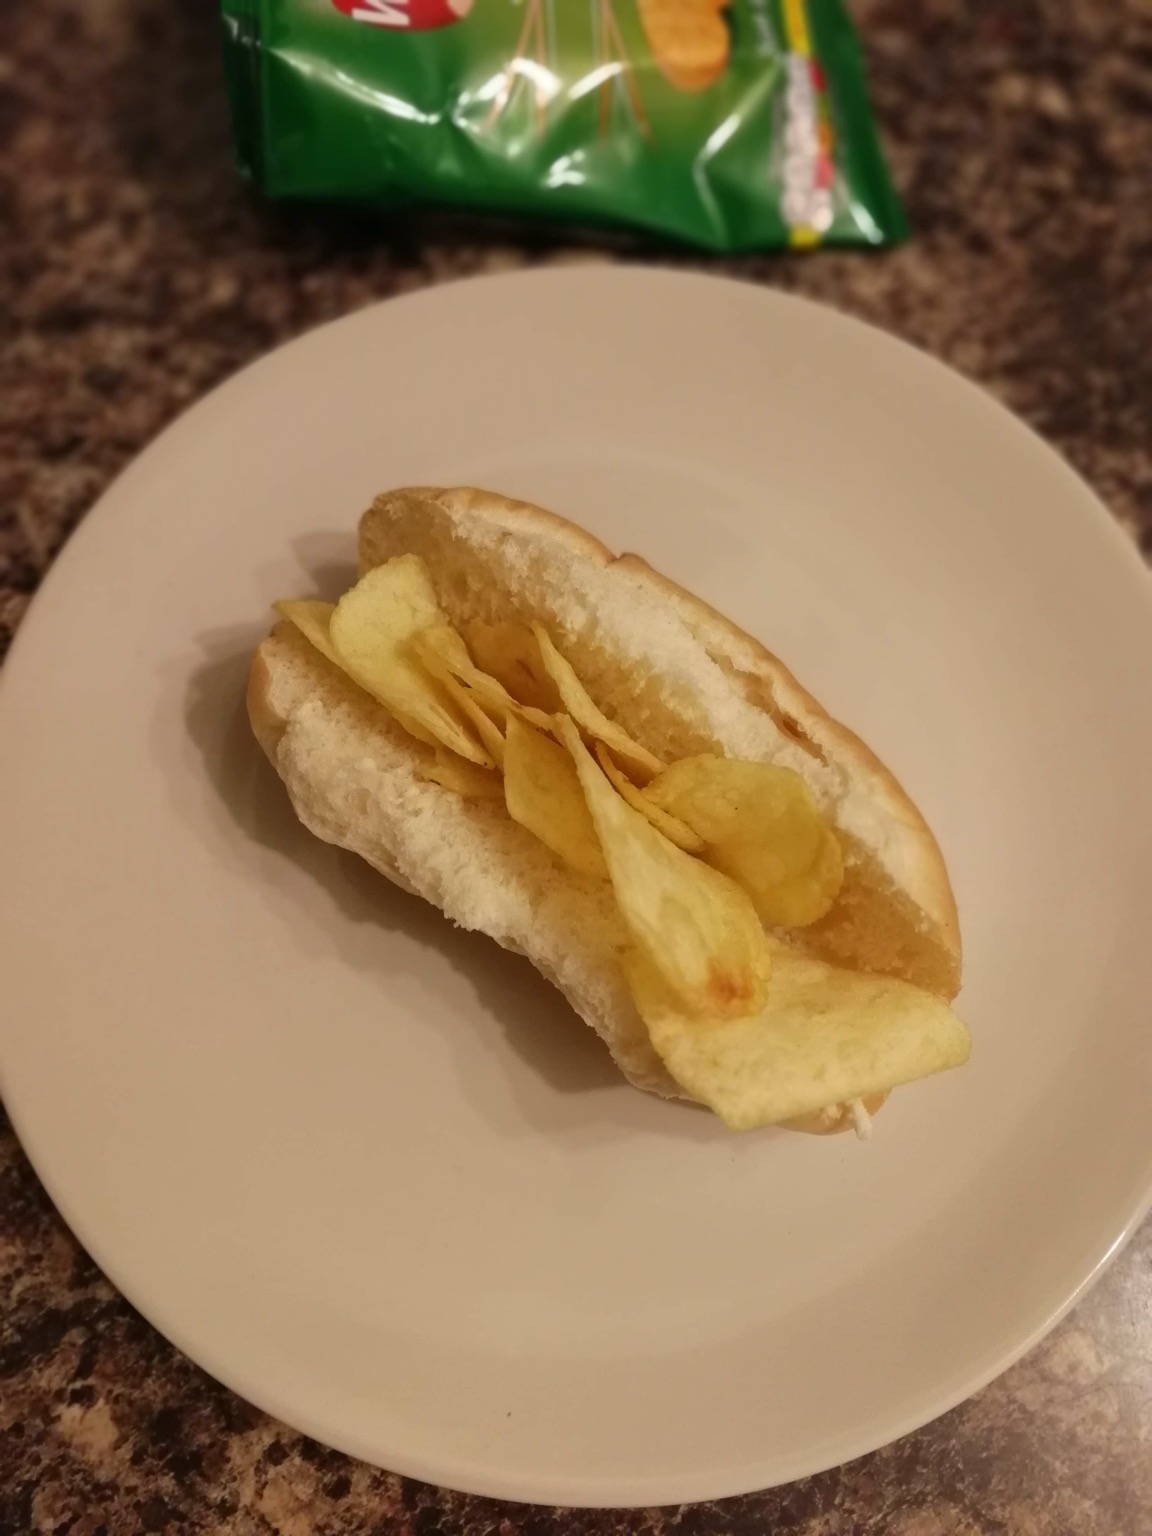 Finger roll filled with potato crisps, crisp bag visible